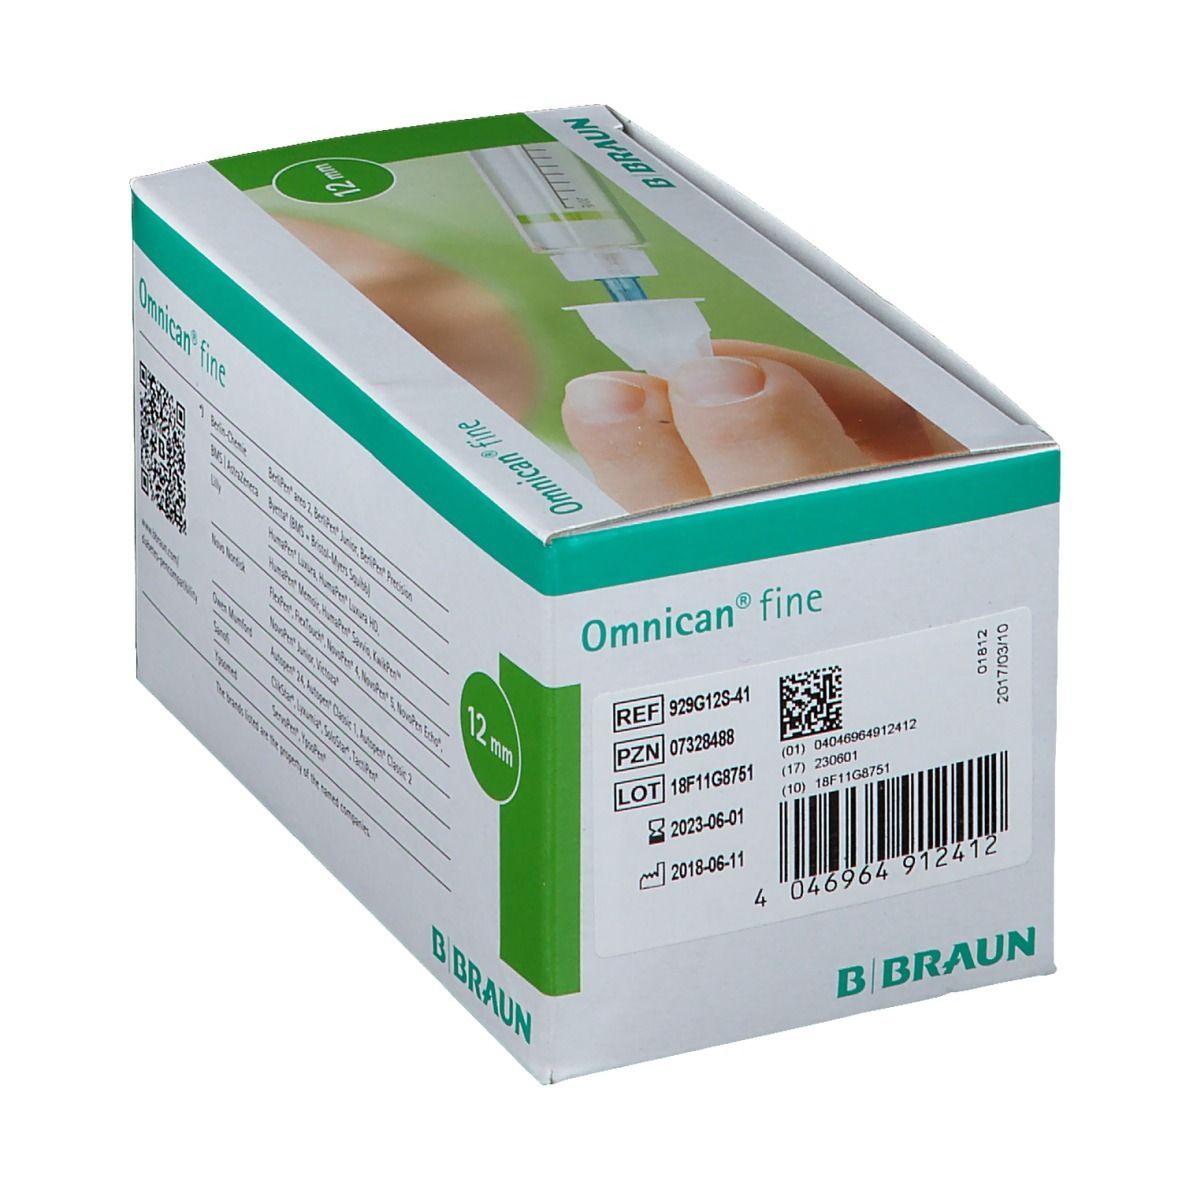 Omnican® fine Penkanüle 29G 0,33 x 12mm